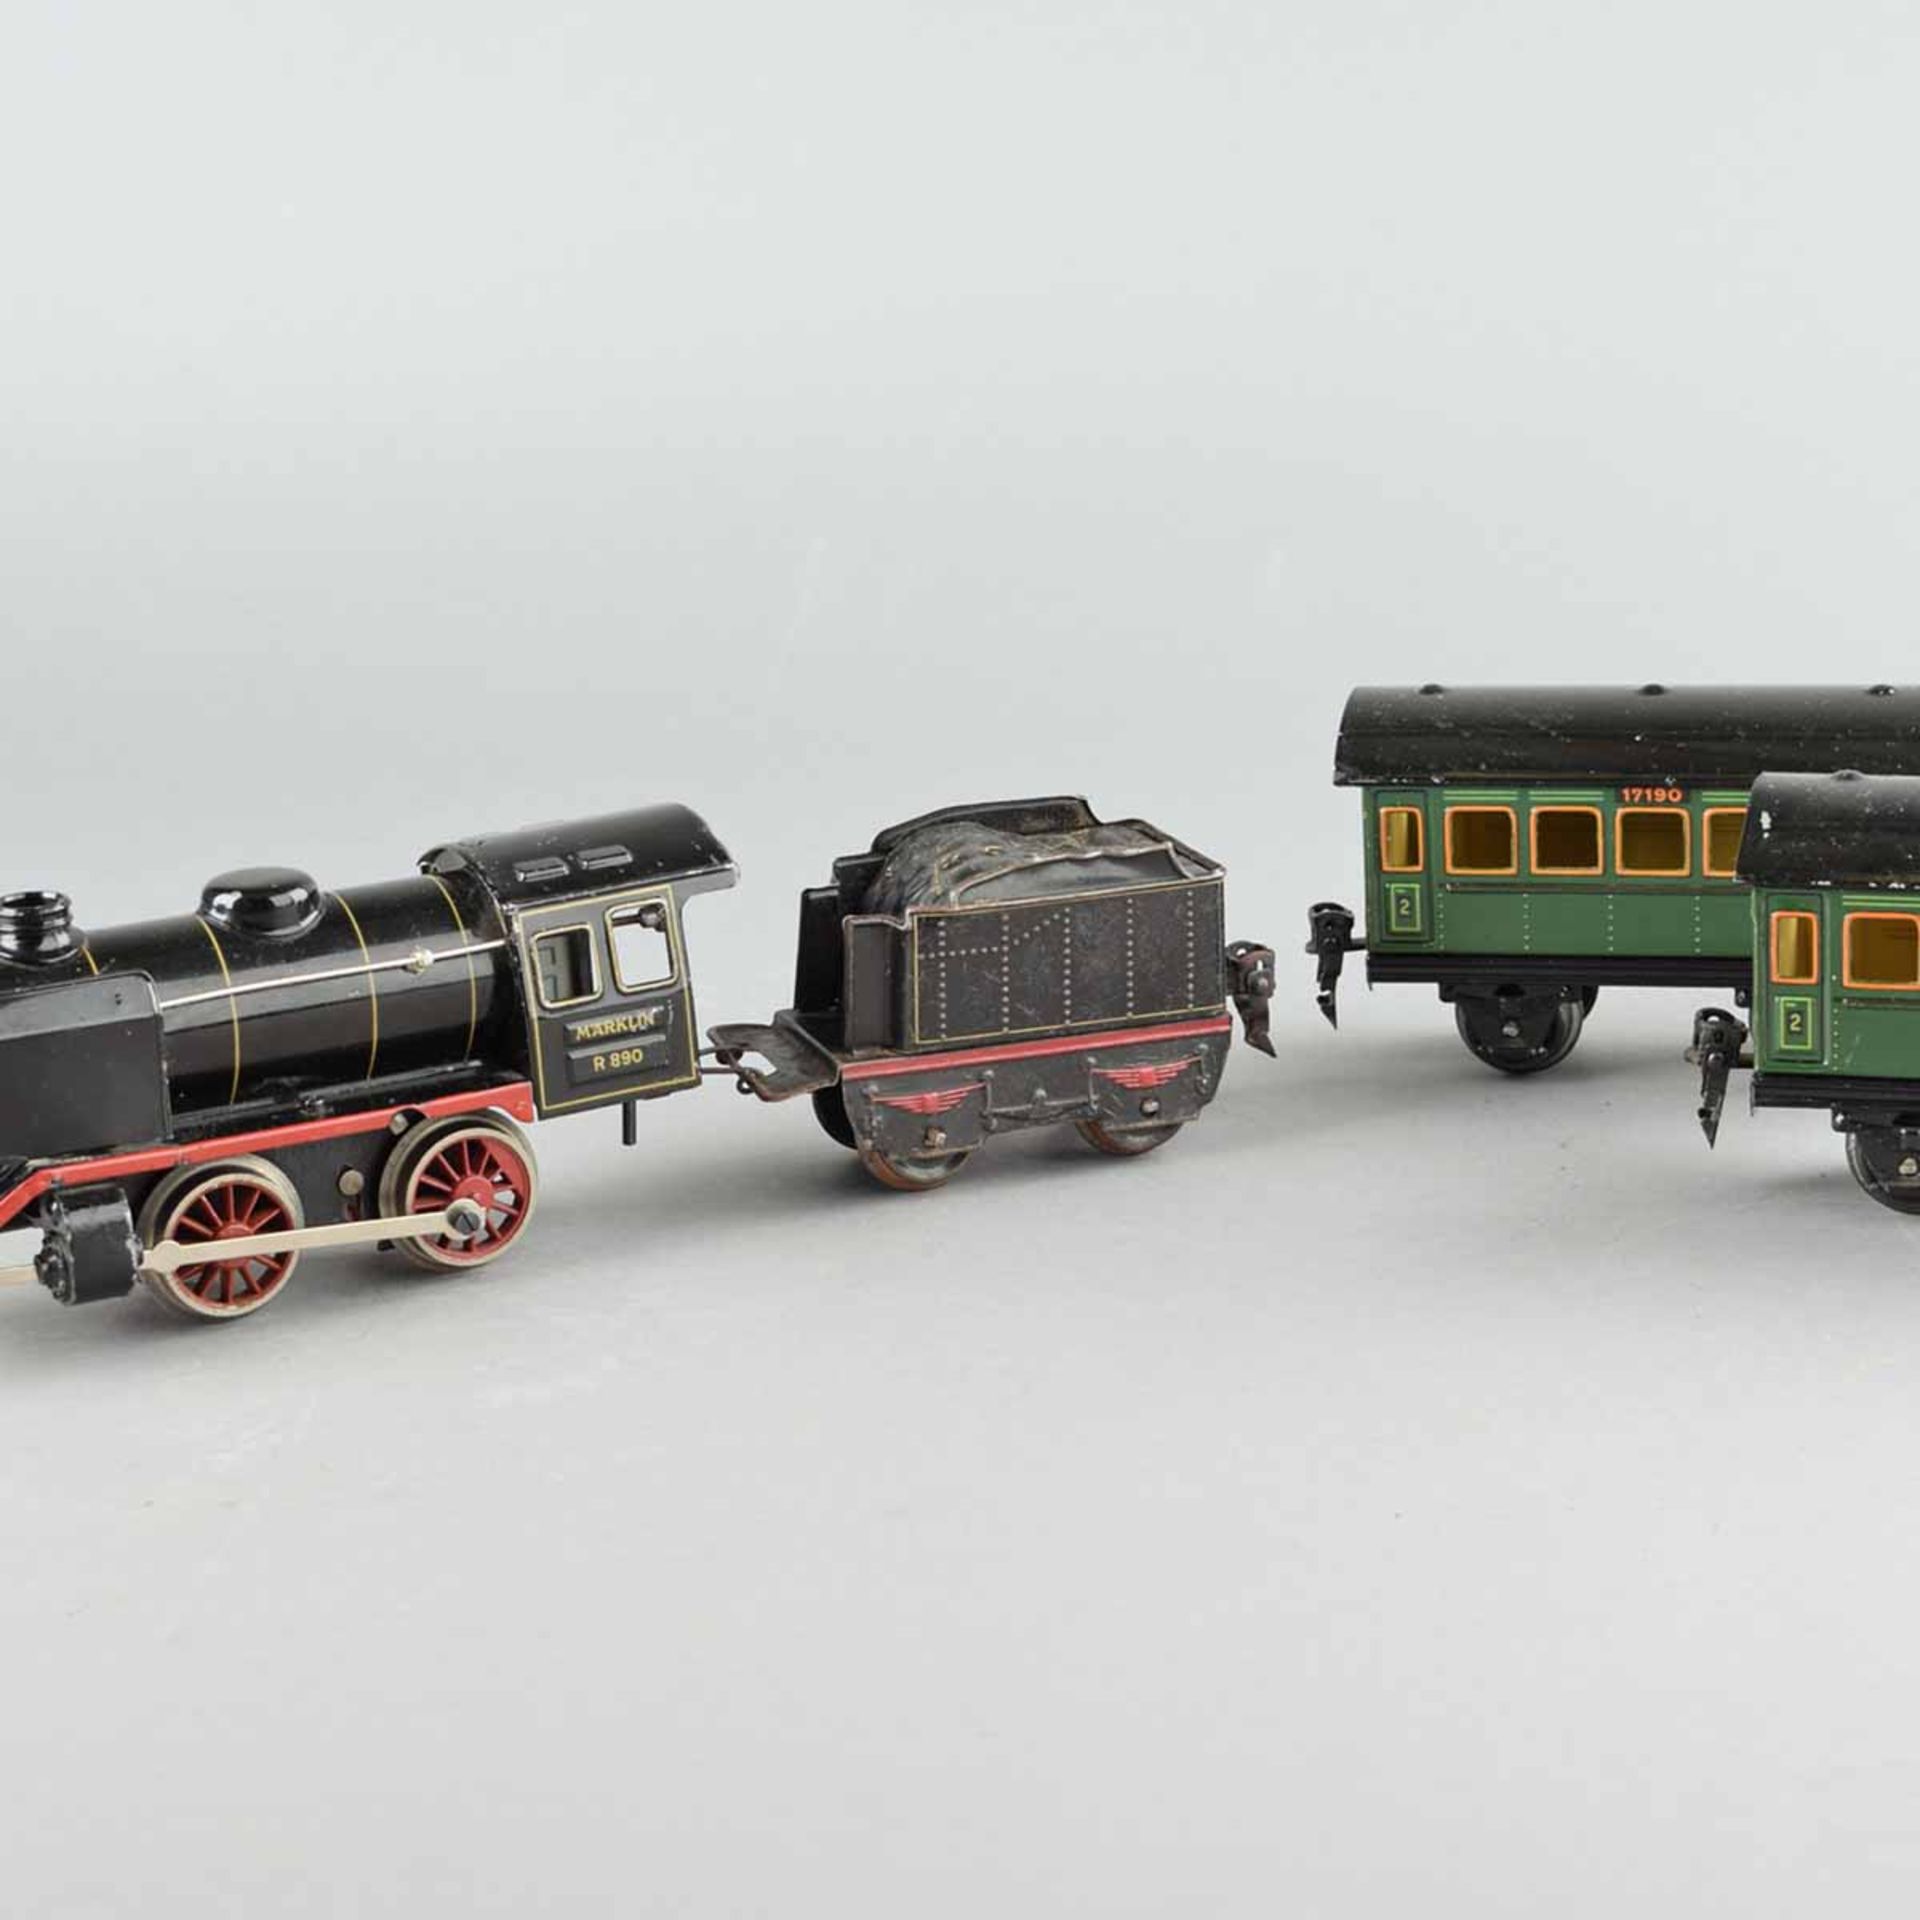 Dampflokomotive und Anhänger Hersteller: Märklin, Nr. R890, Federwerk, mit Schlepptender, dazu 2